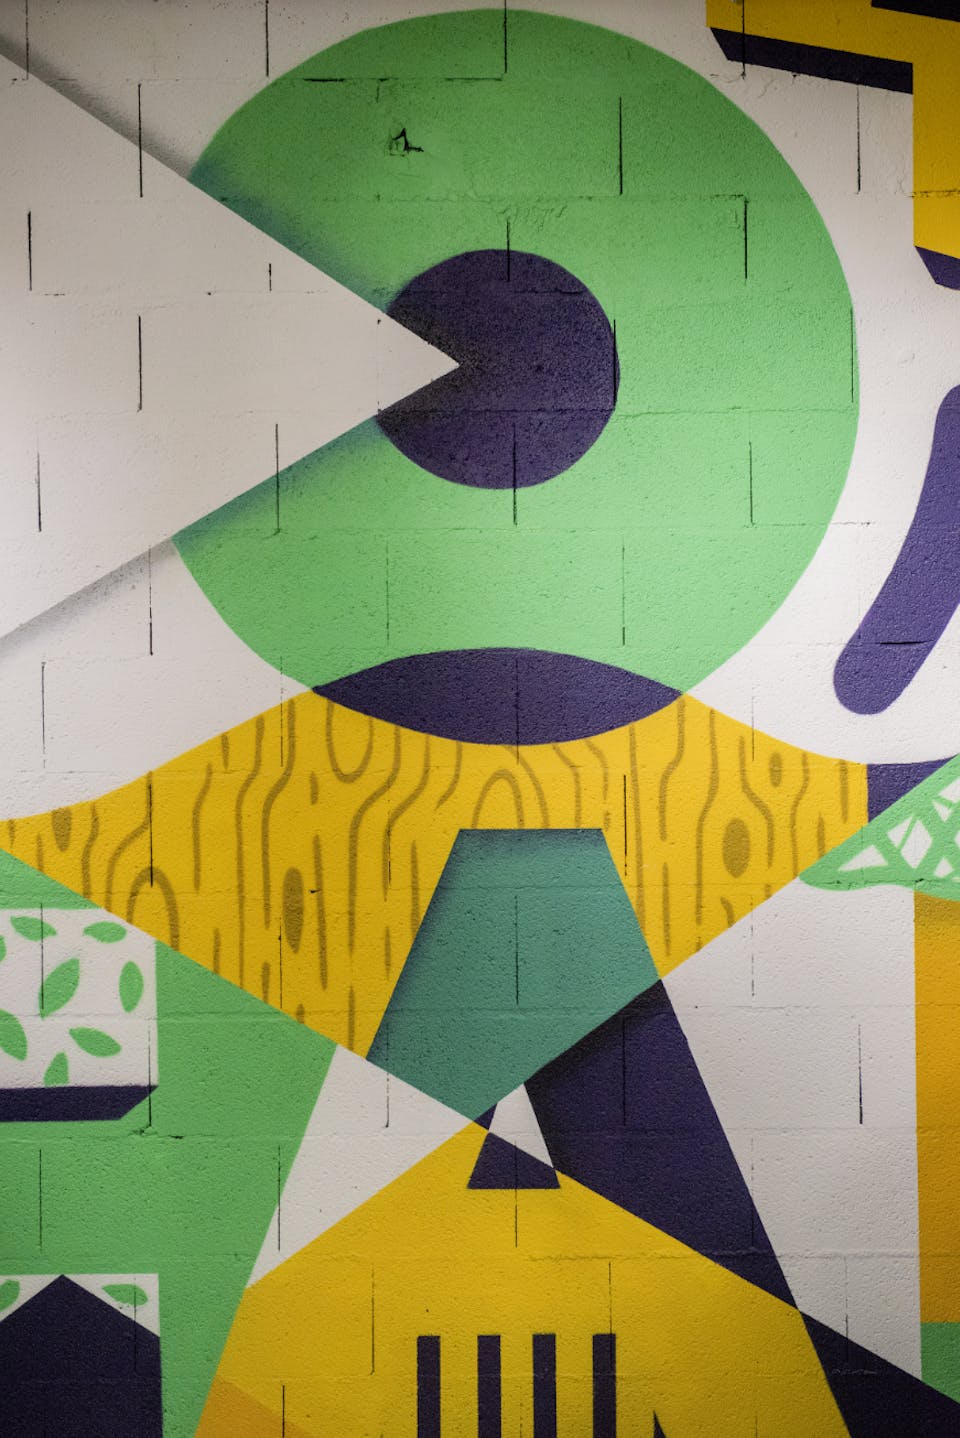 Les "Hameaux Bio" intègrent une nouvelle fresque murale intérieure à leur espace.